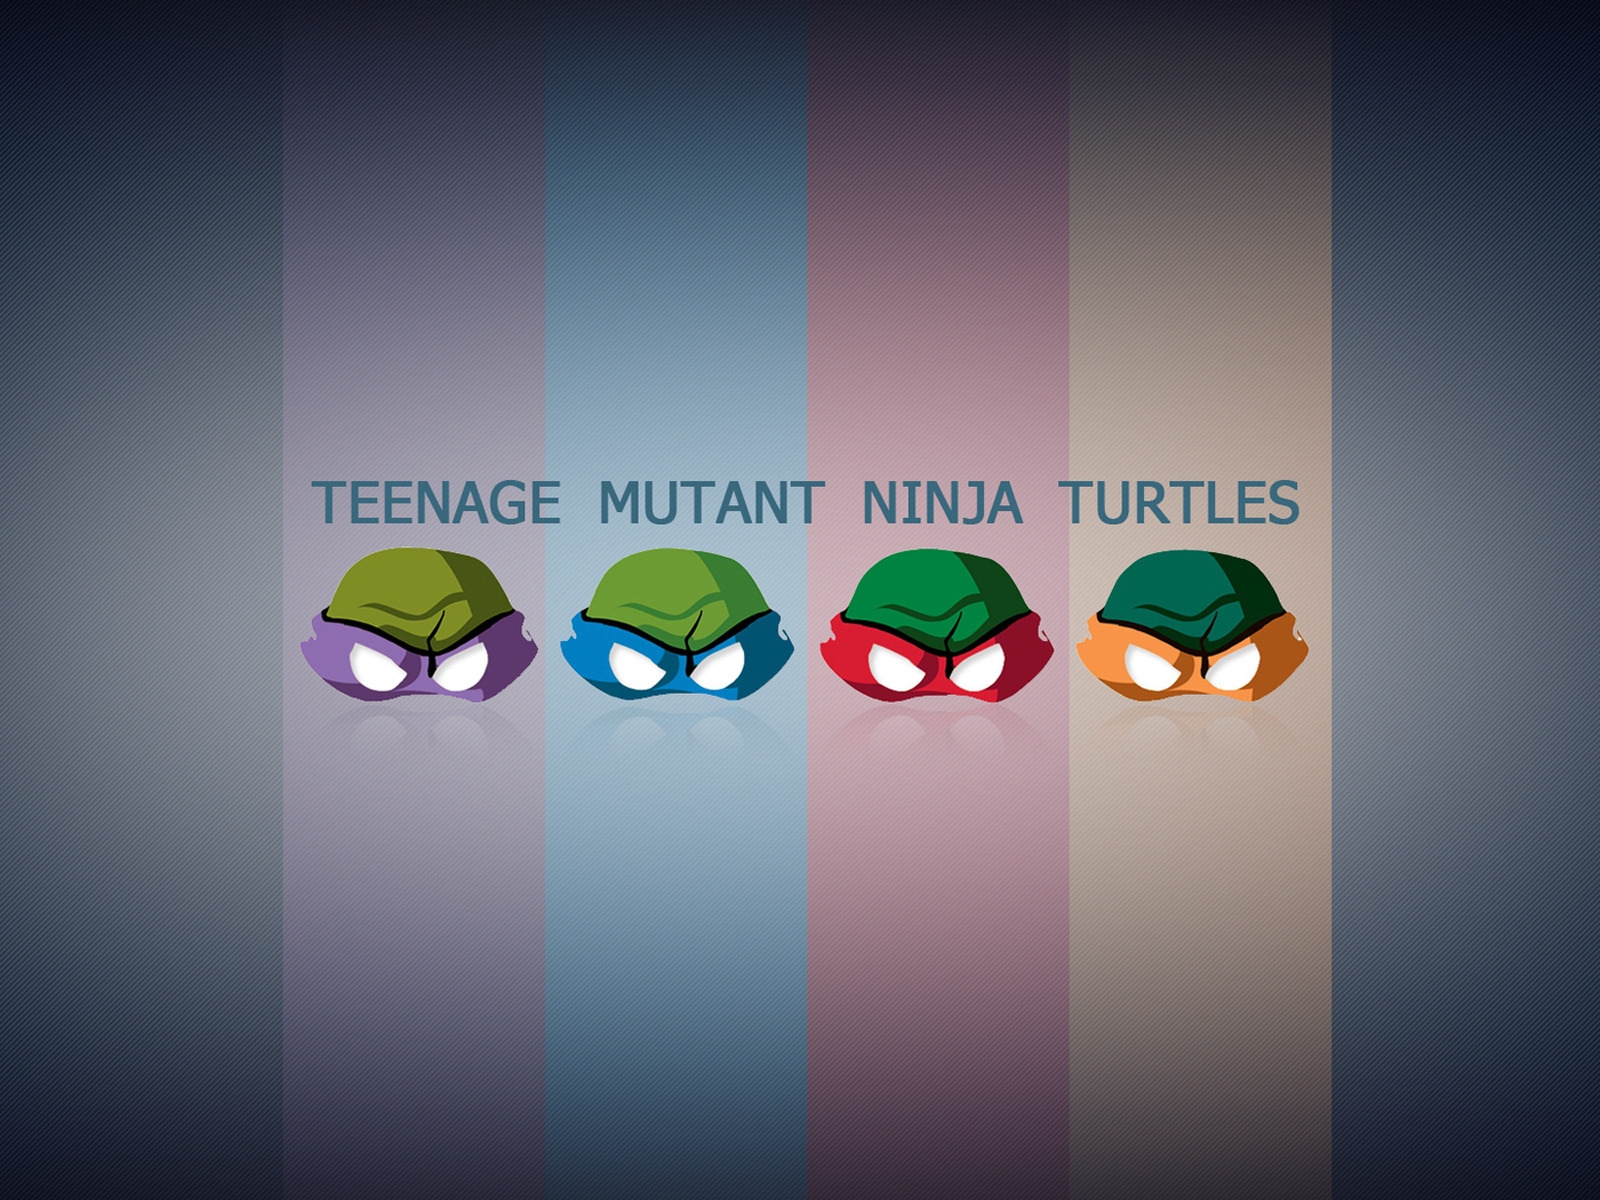 Teengae Mutant Ninja Turtles for 1600 x 1200 resolution